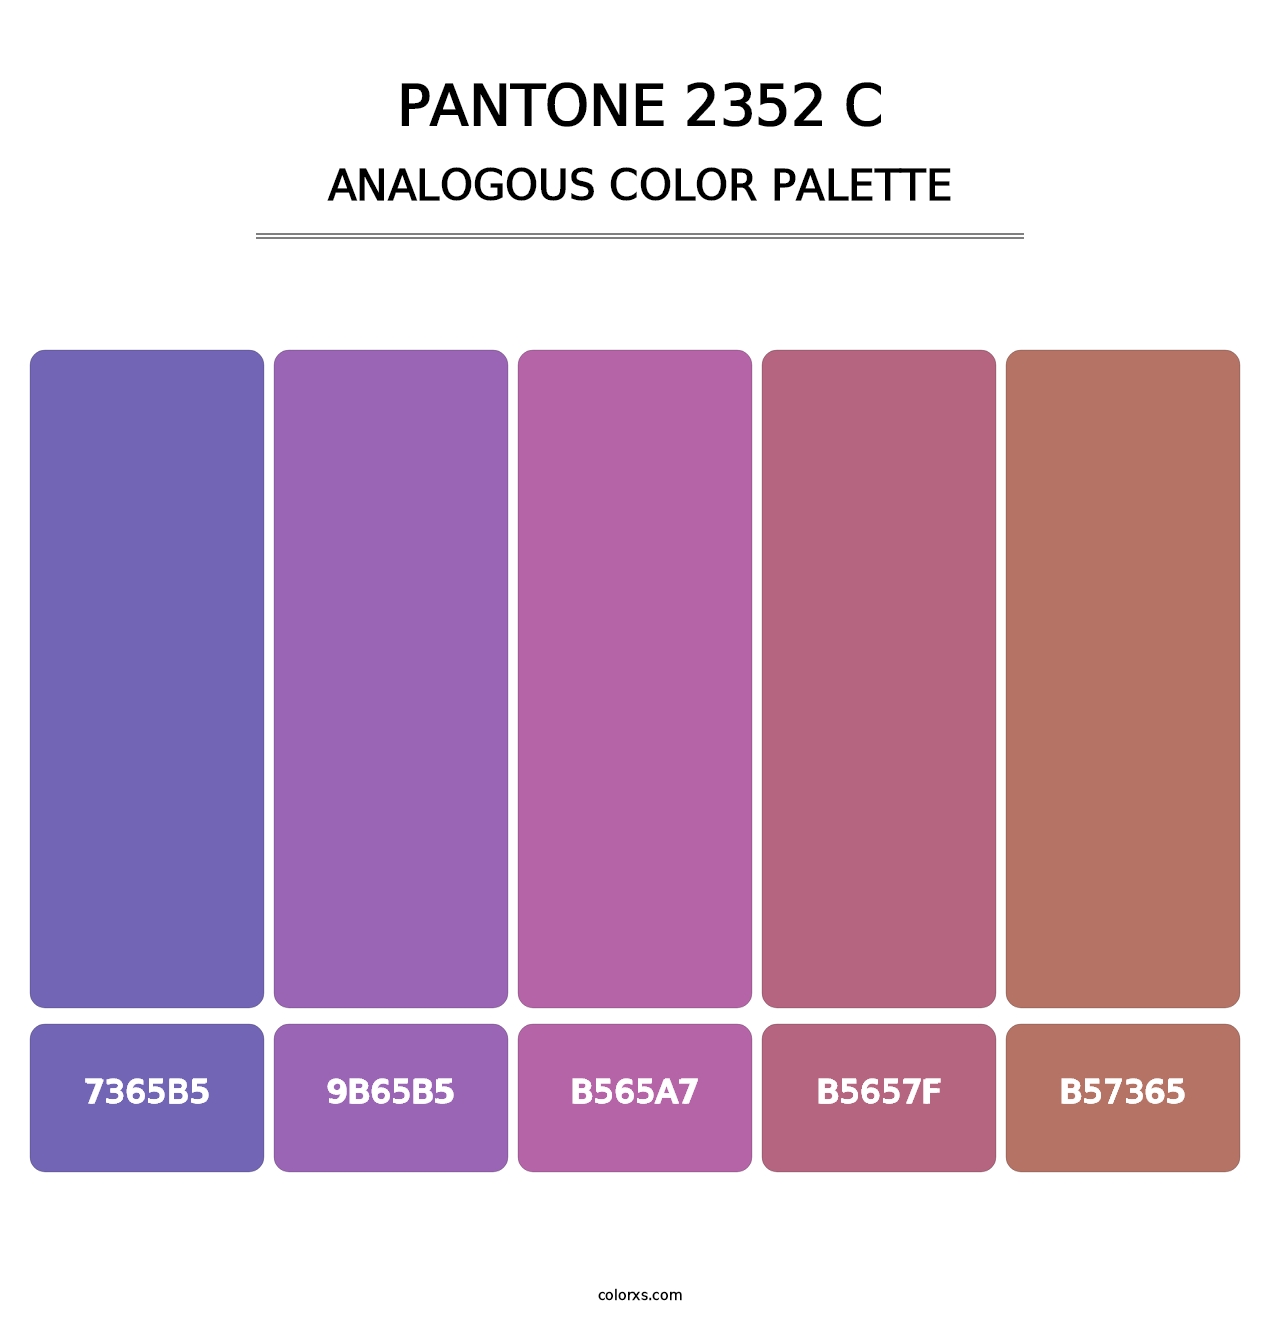 PANTONE 2352 C - Analogous Color Palette